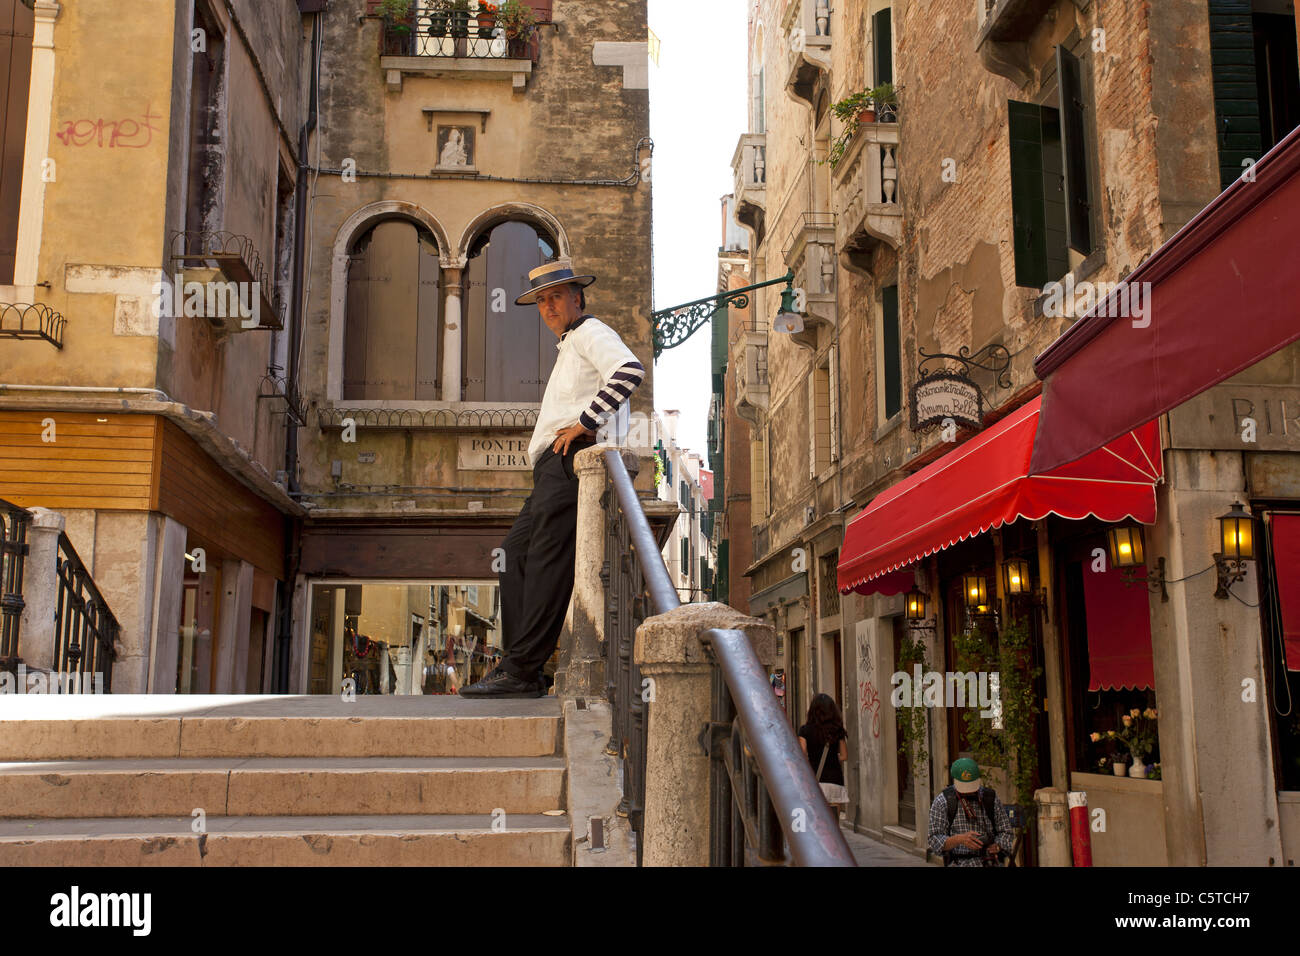 Gondoliere gekleidet in einheitlichen warten auf eine kleine Brücke in Venedig, Italien für Kunden zu kommen.  Restaurants und Geschäfte. Stockfoto